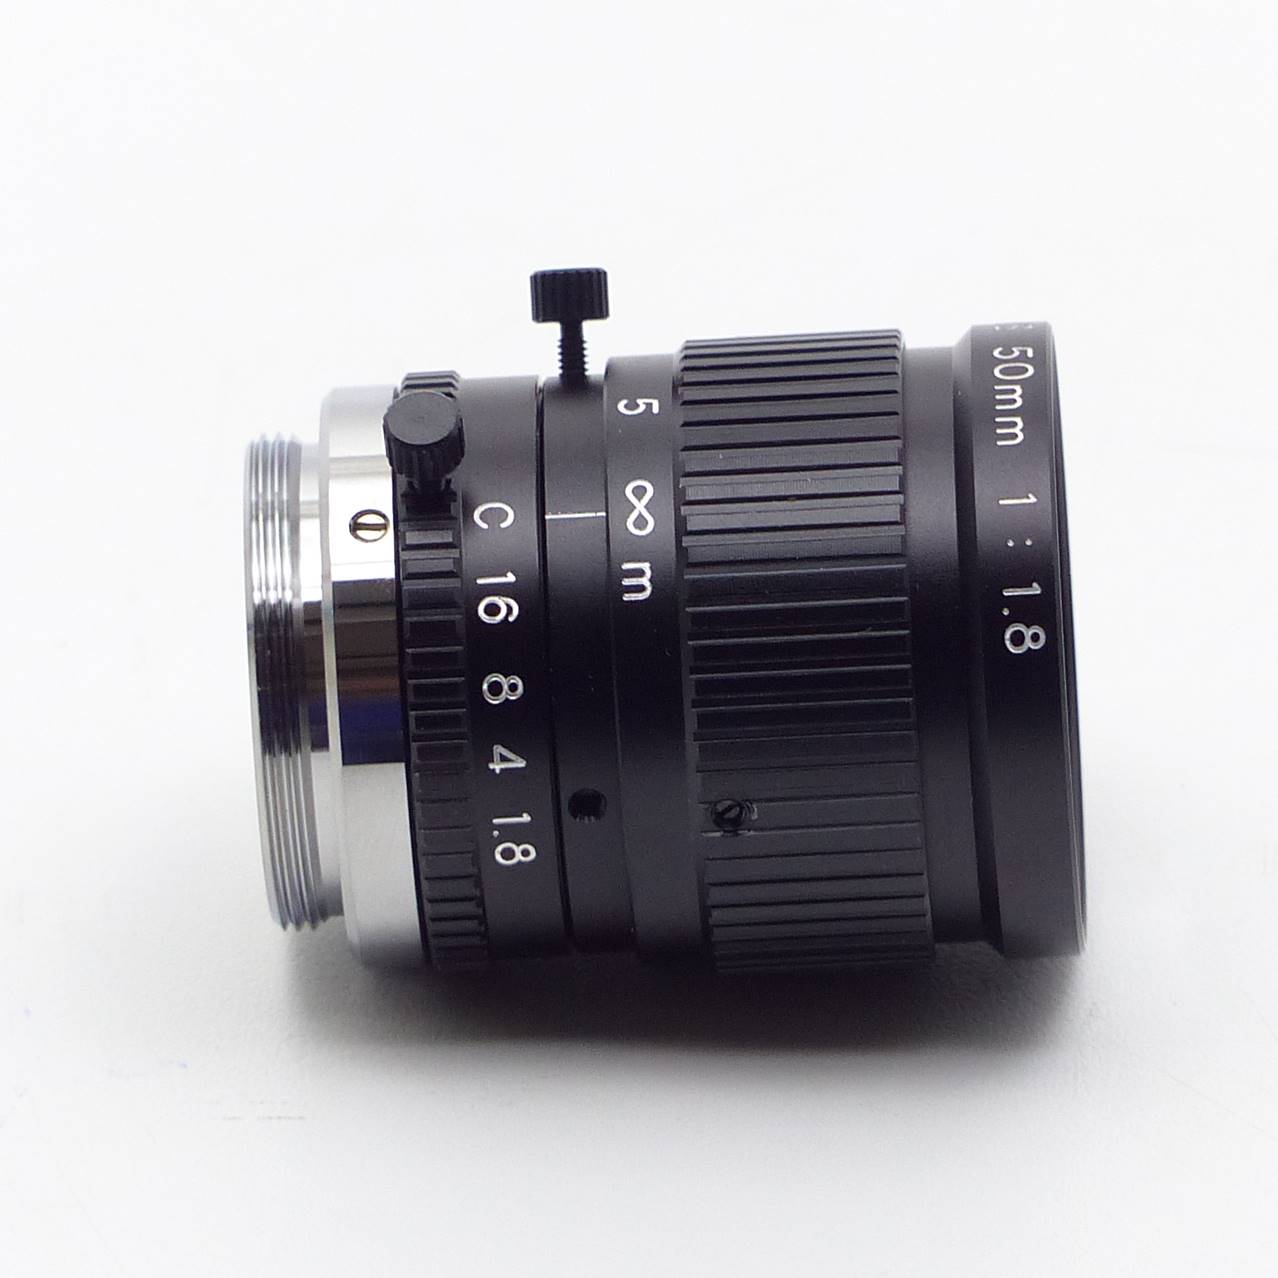 Lens CV-L50 